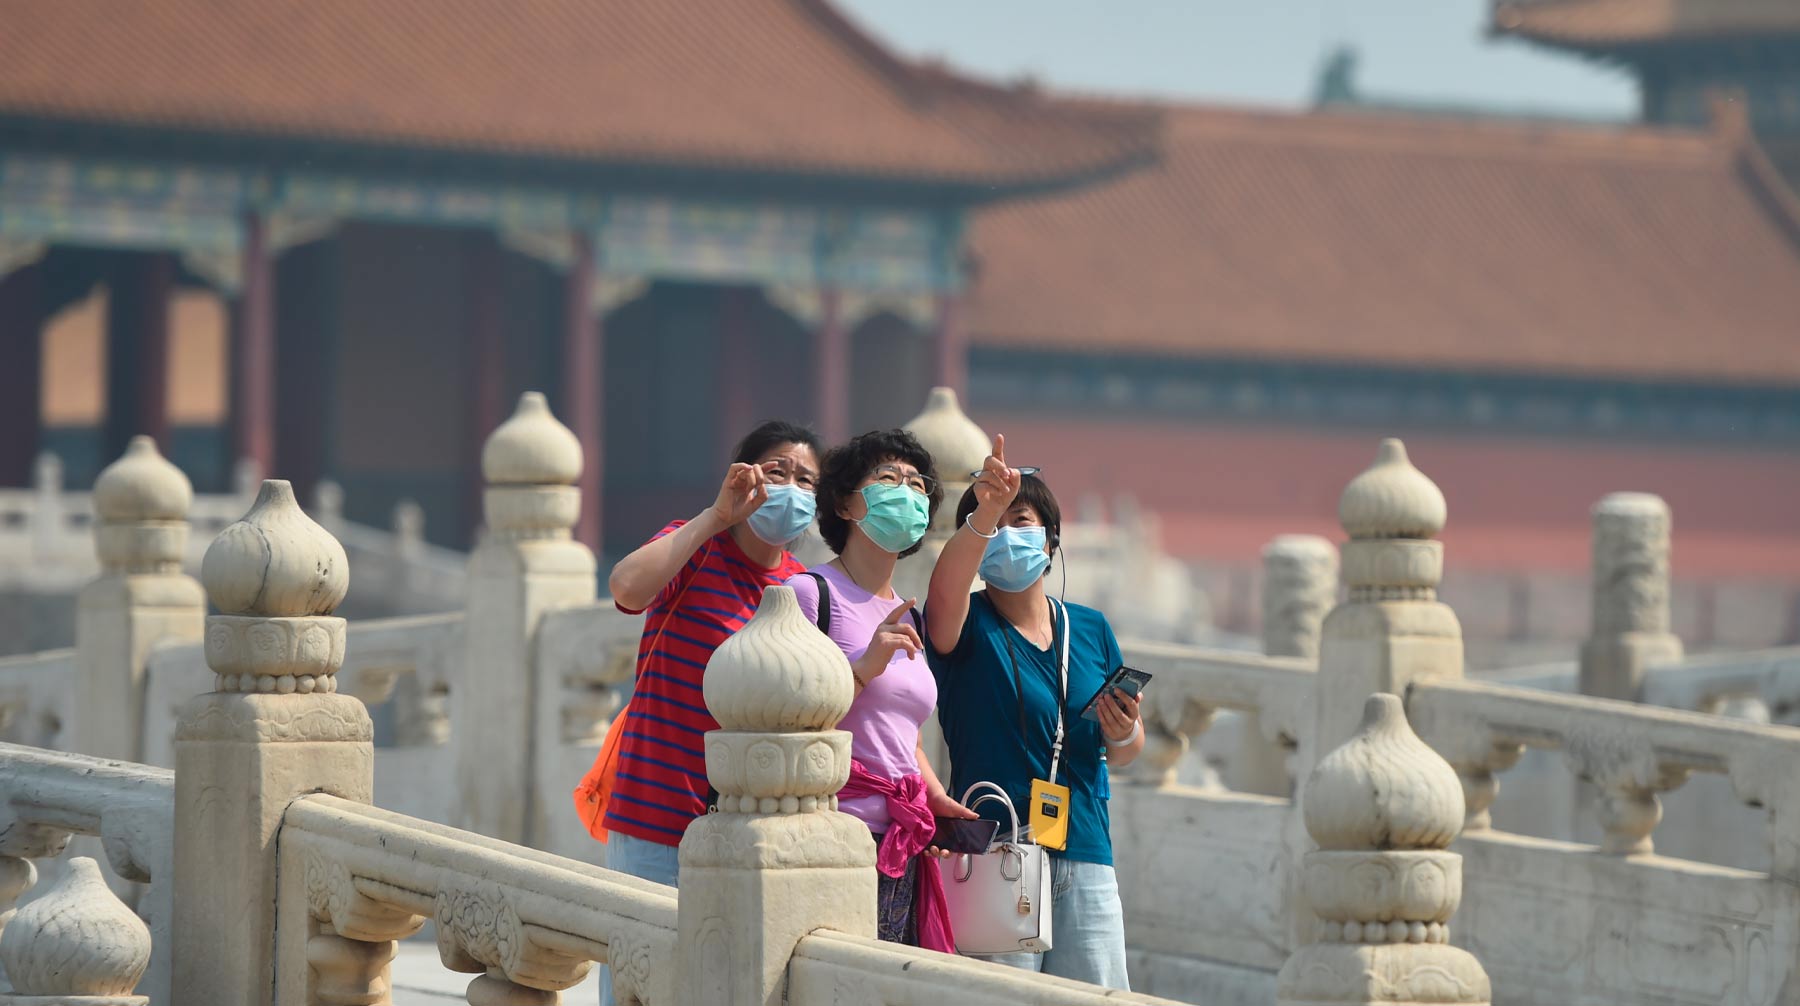 Ранее ученые сообщили, что найденный в КНР штамм гриппа G4 EA H1N1 может стать причиной новой пандемии Фото: © Global Look Press / Chen Zhonghao